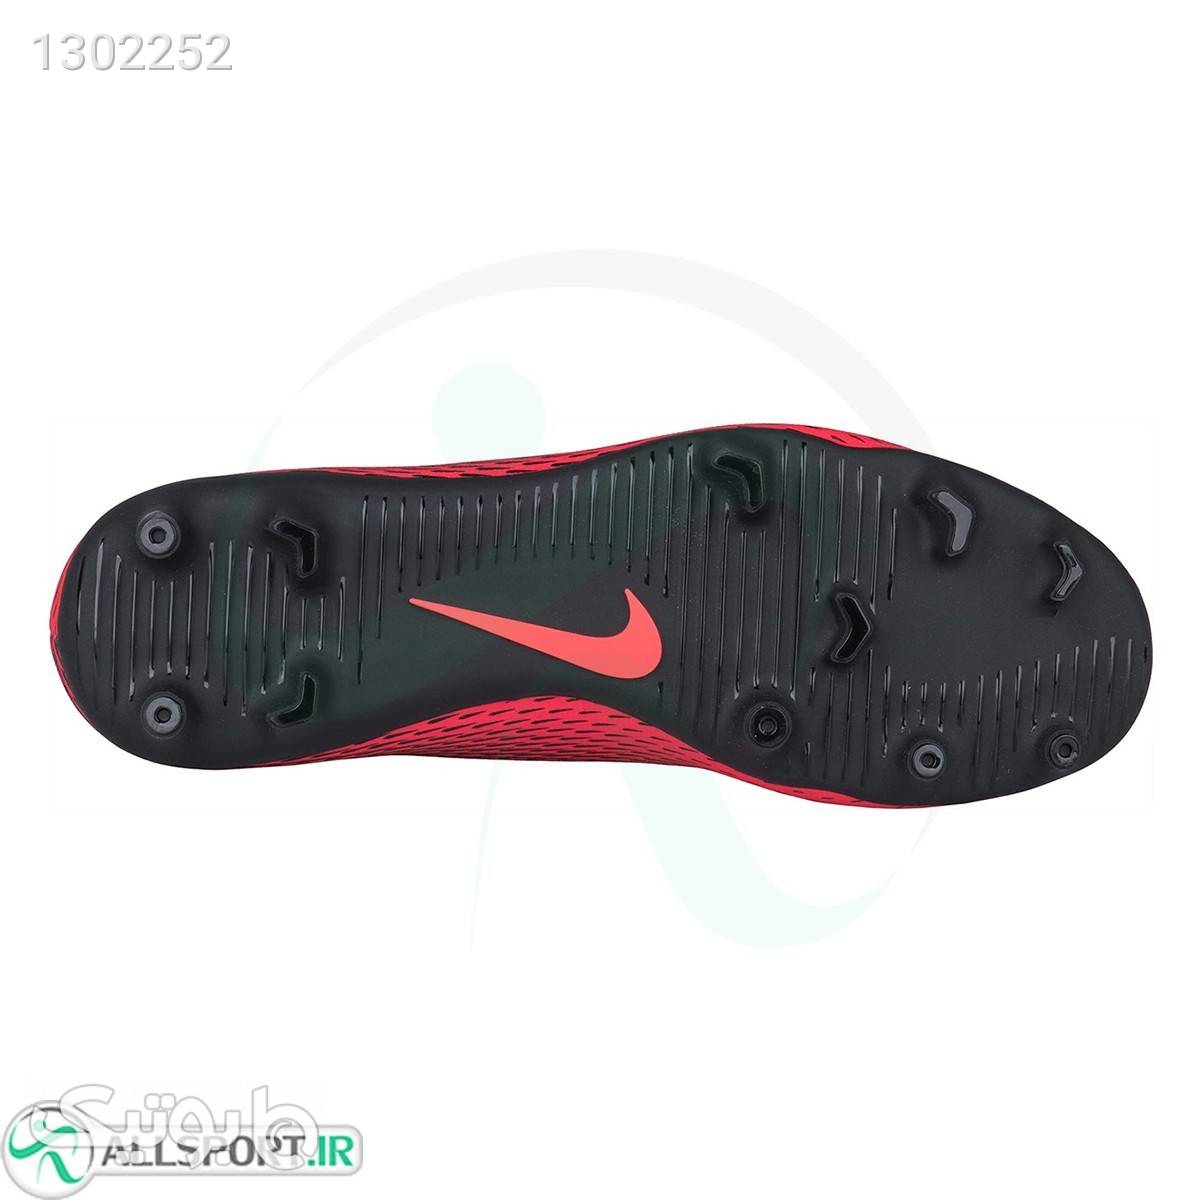 کفش فوتبال نایک براواتا Nike Bravata II Fg Krampon 844436601